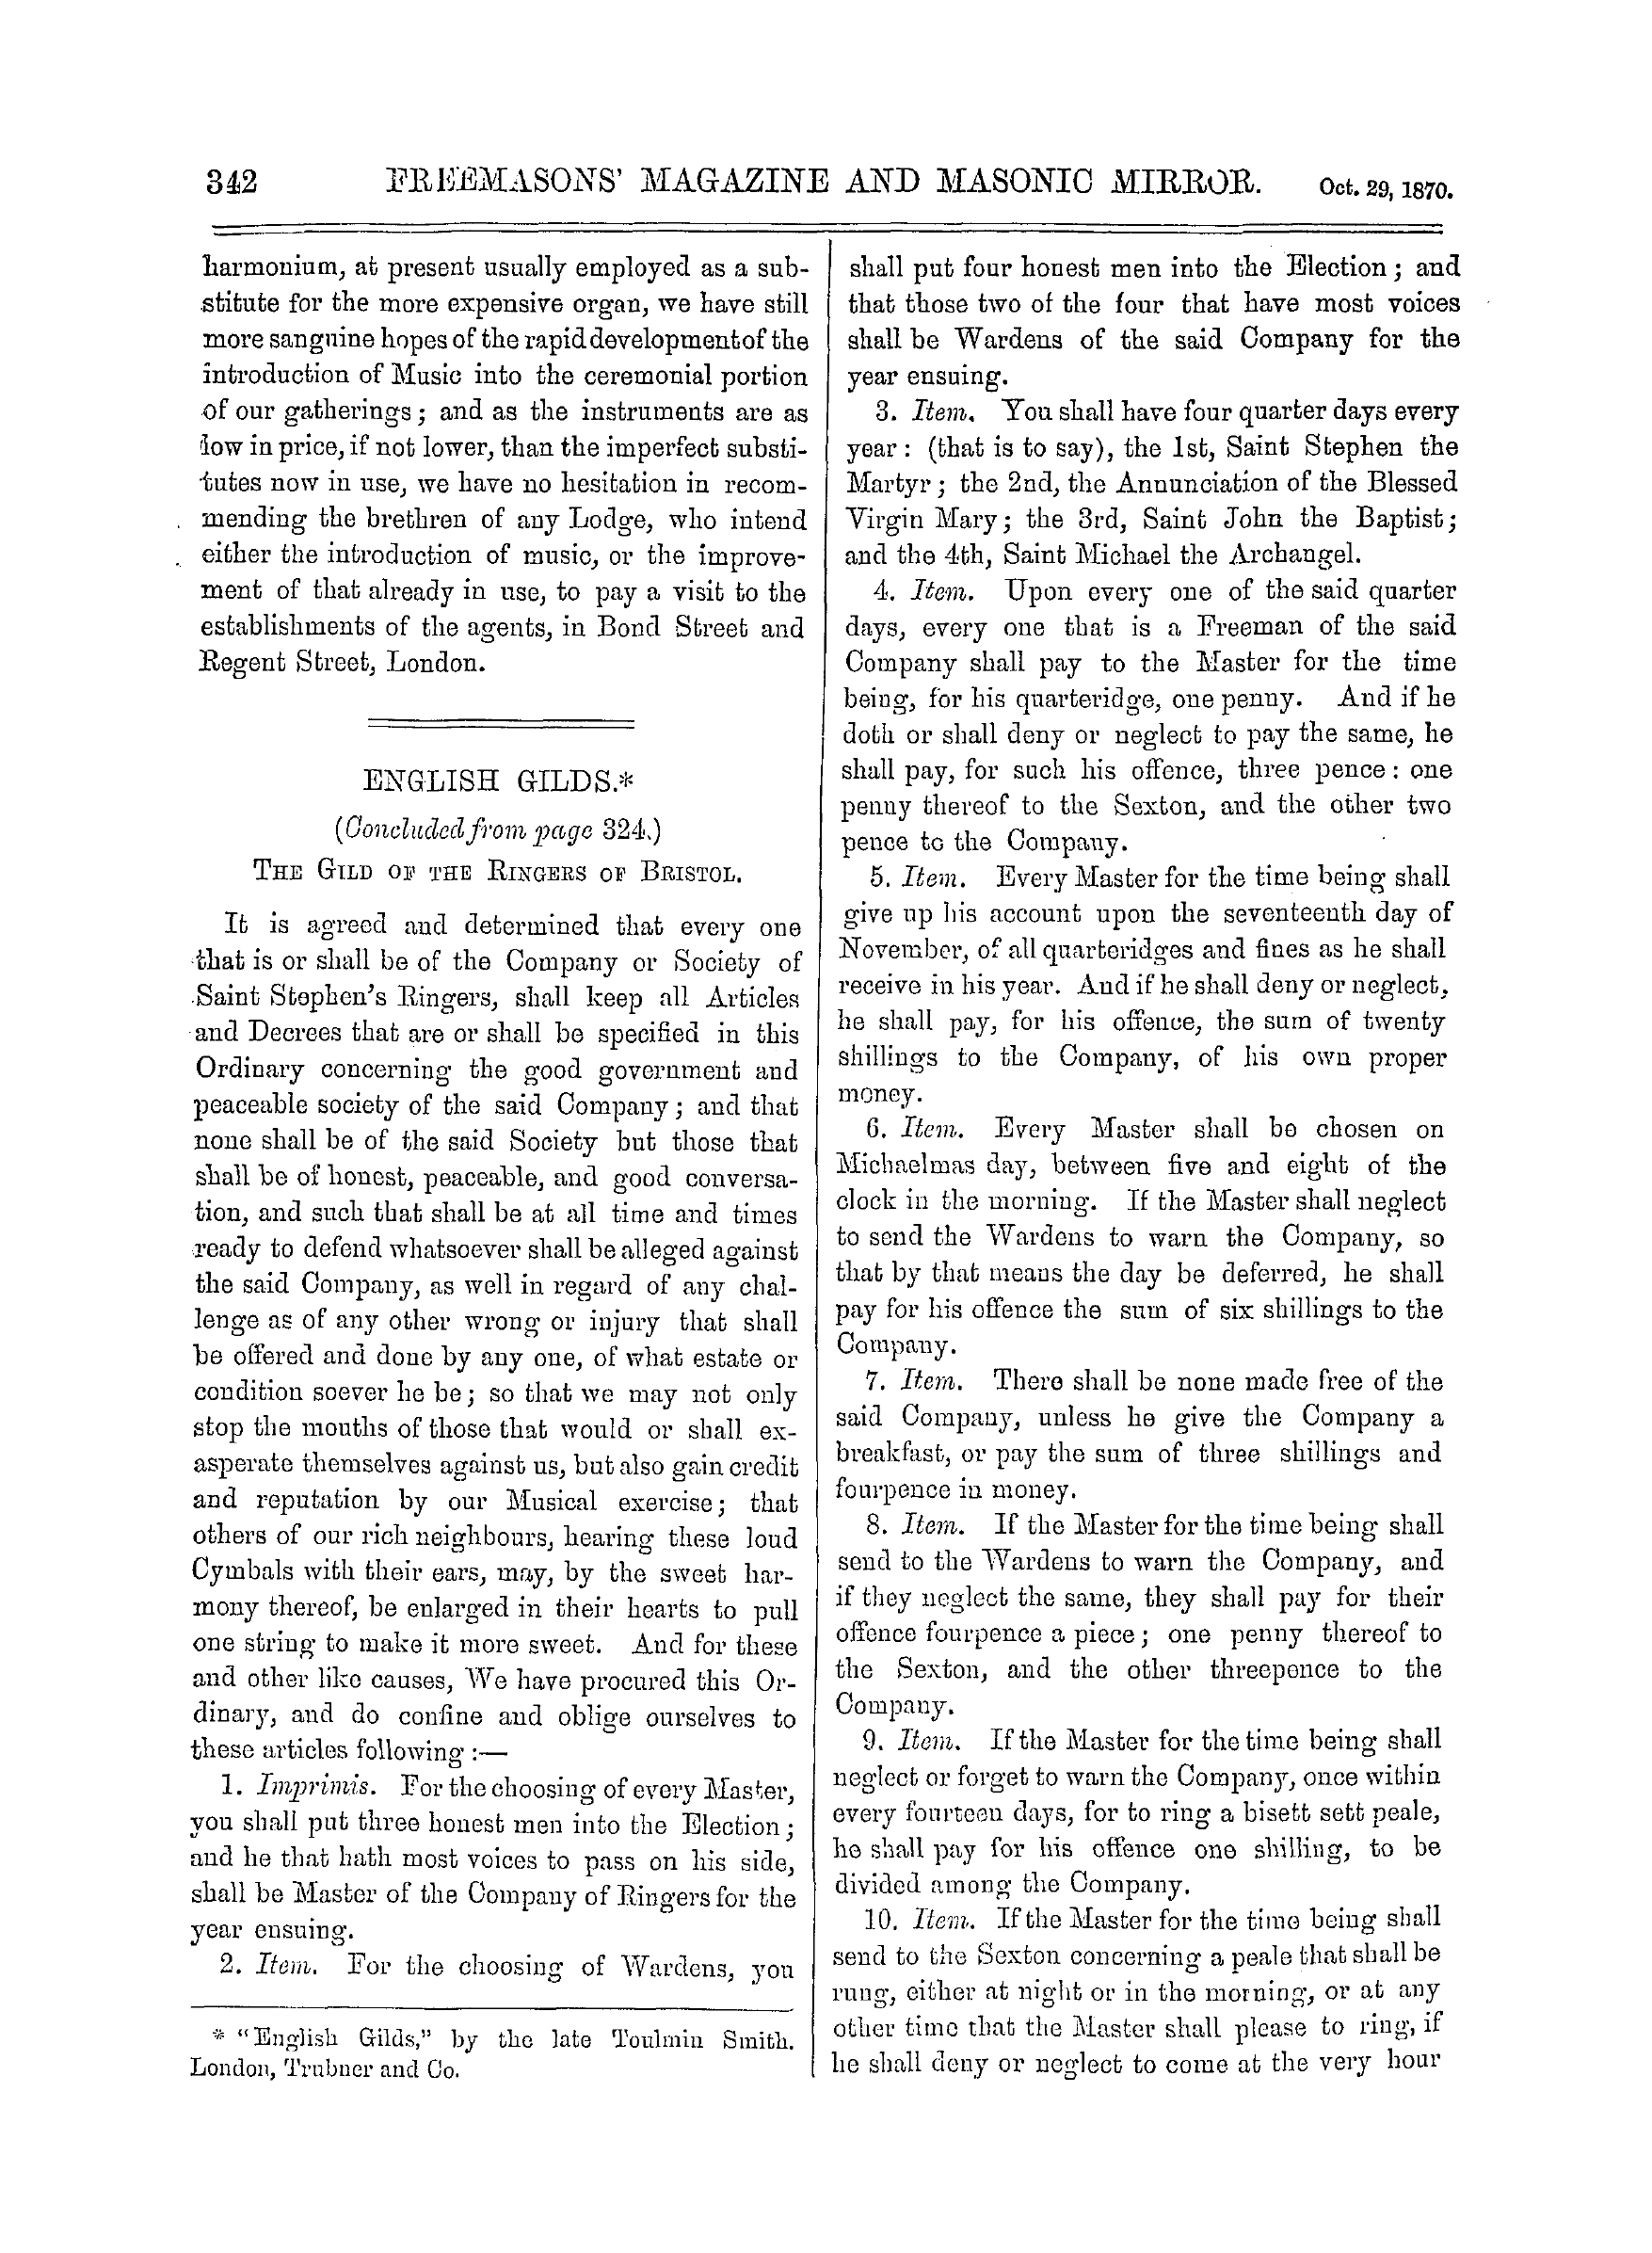 The Freemasons' Monthly Magazine: 1870-10-29 - English Gilds. *